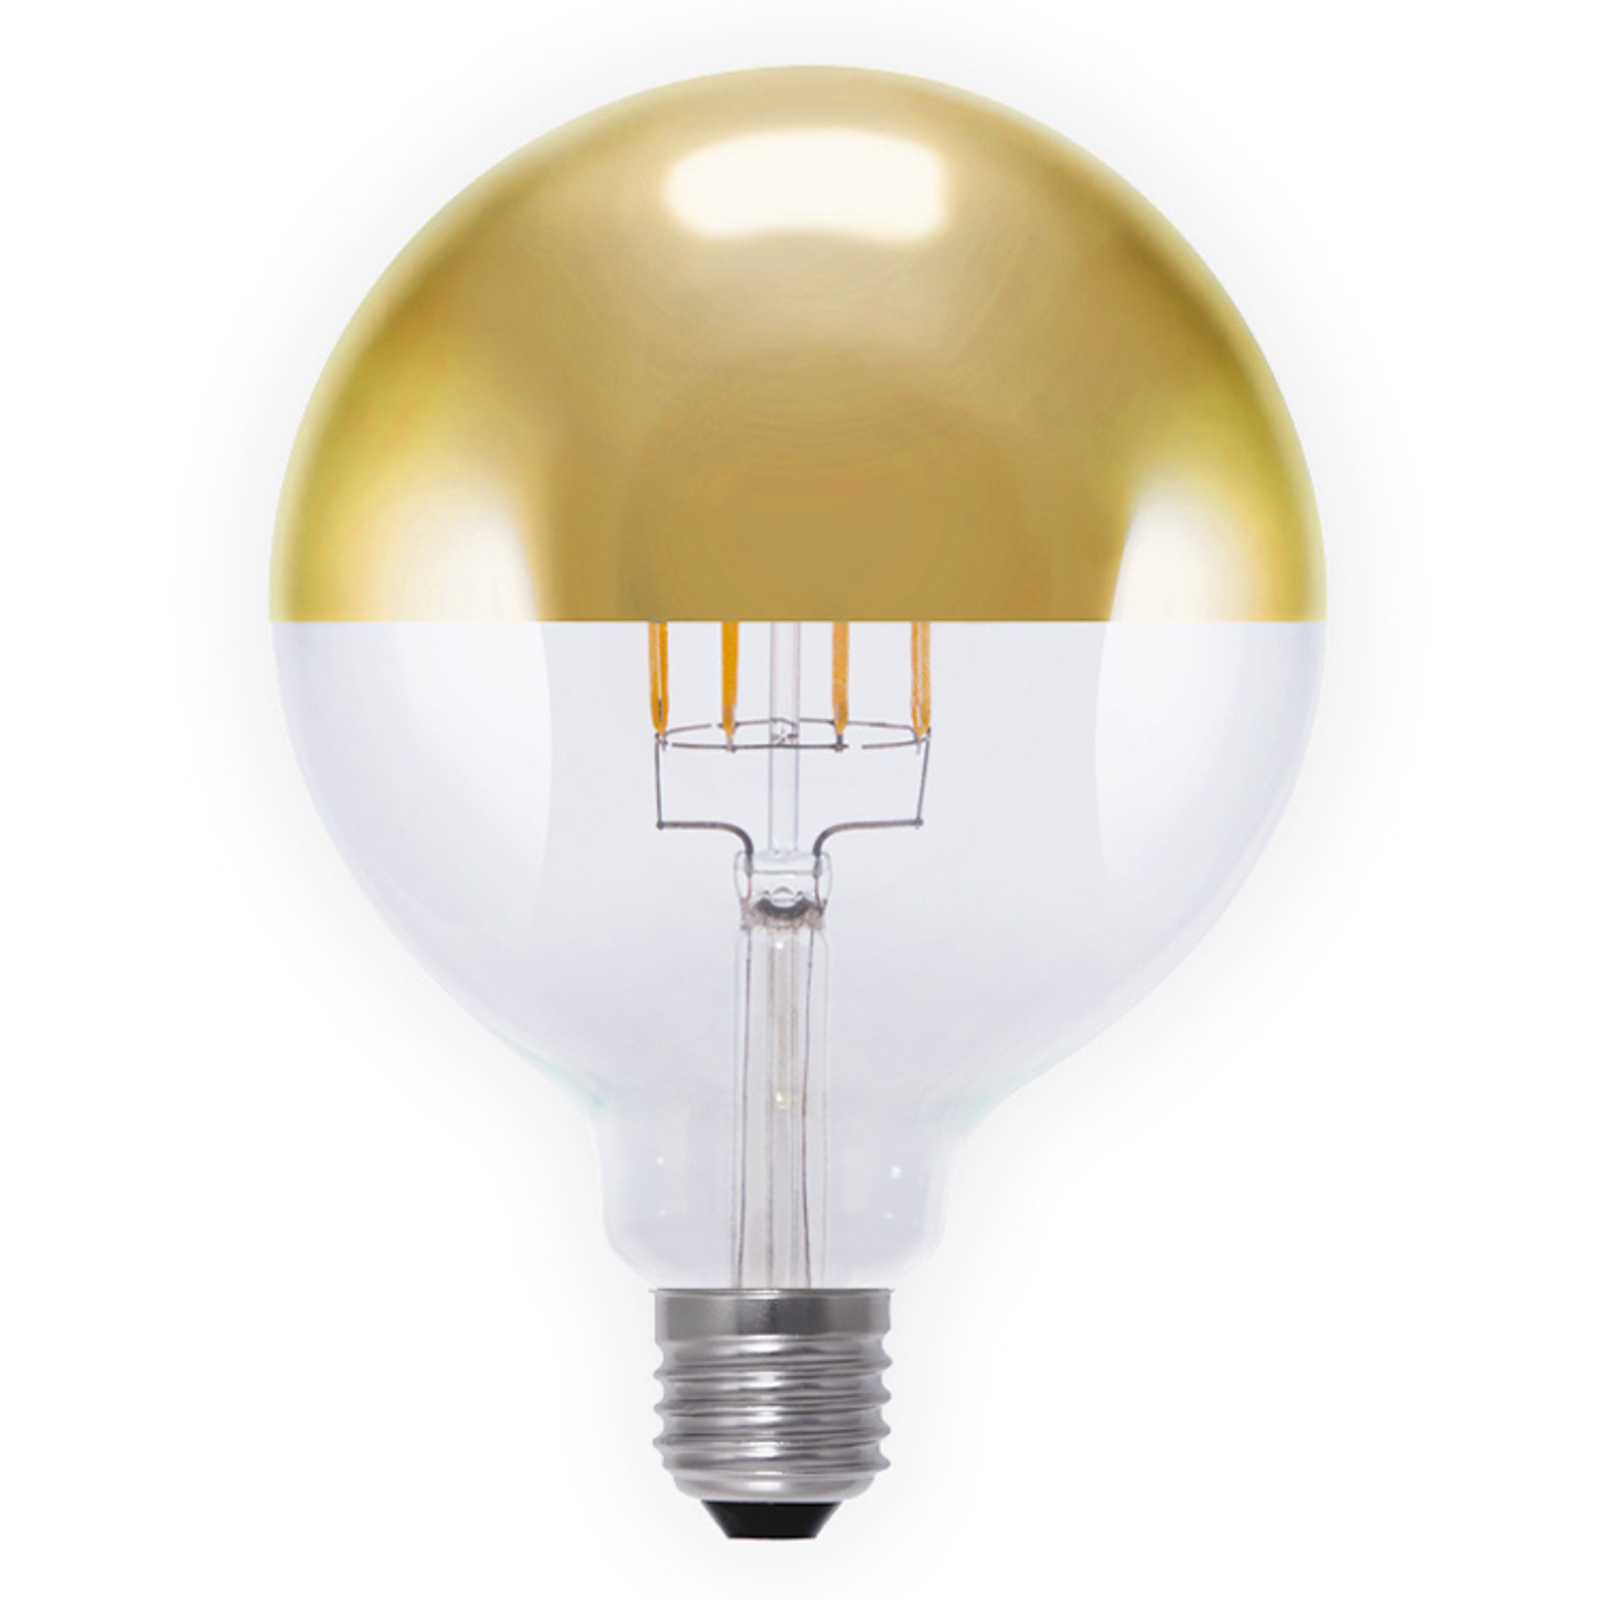 LED tükrös gömb lámpa E27 7W arany